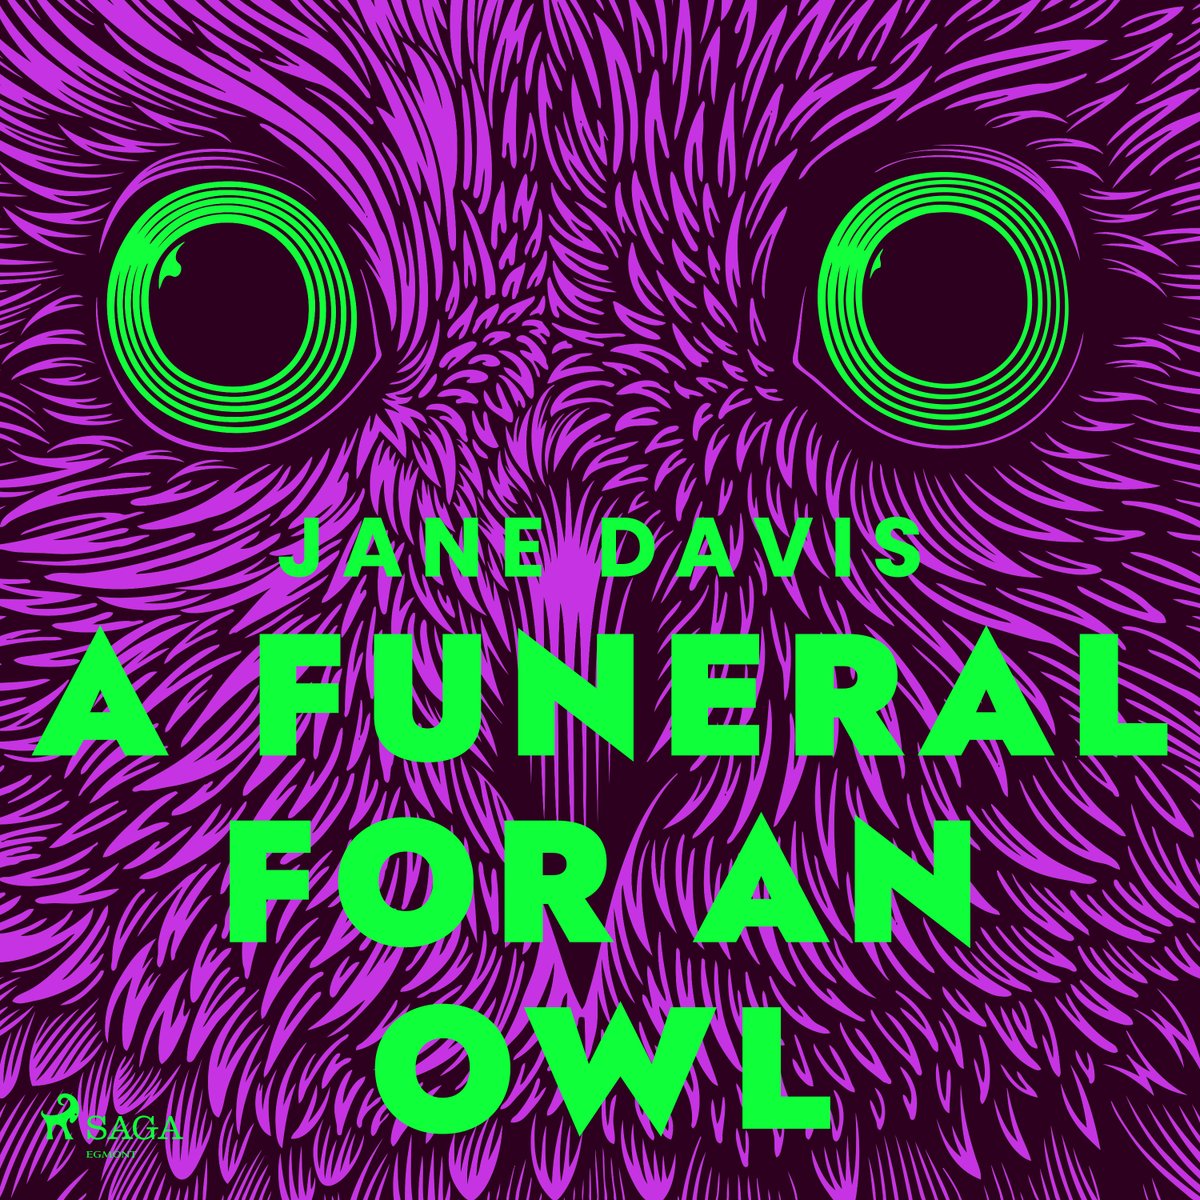 A Funeral for an Owl - Jane Davis